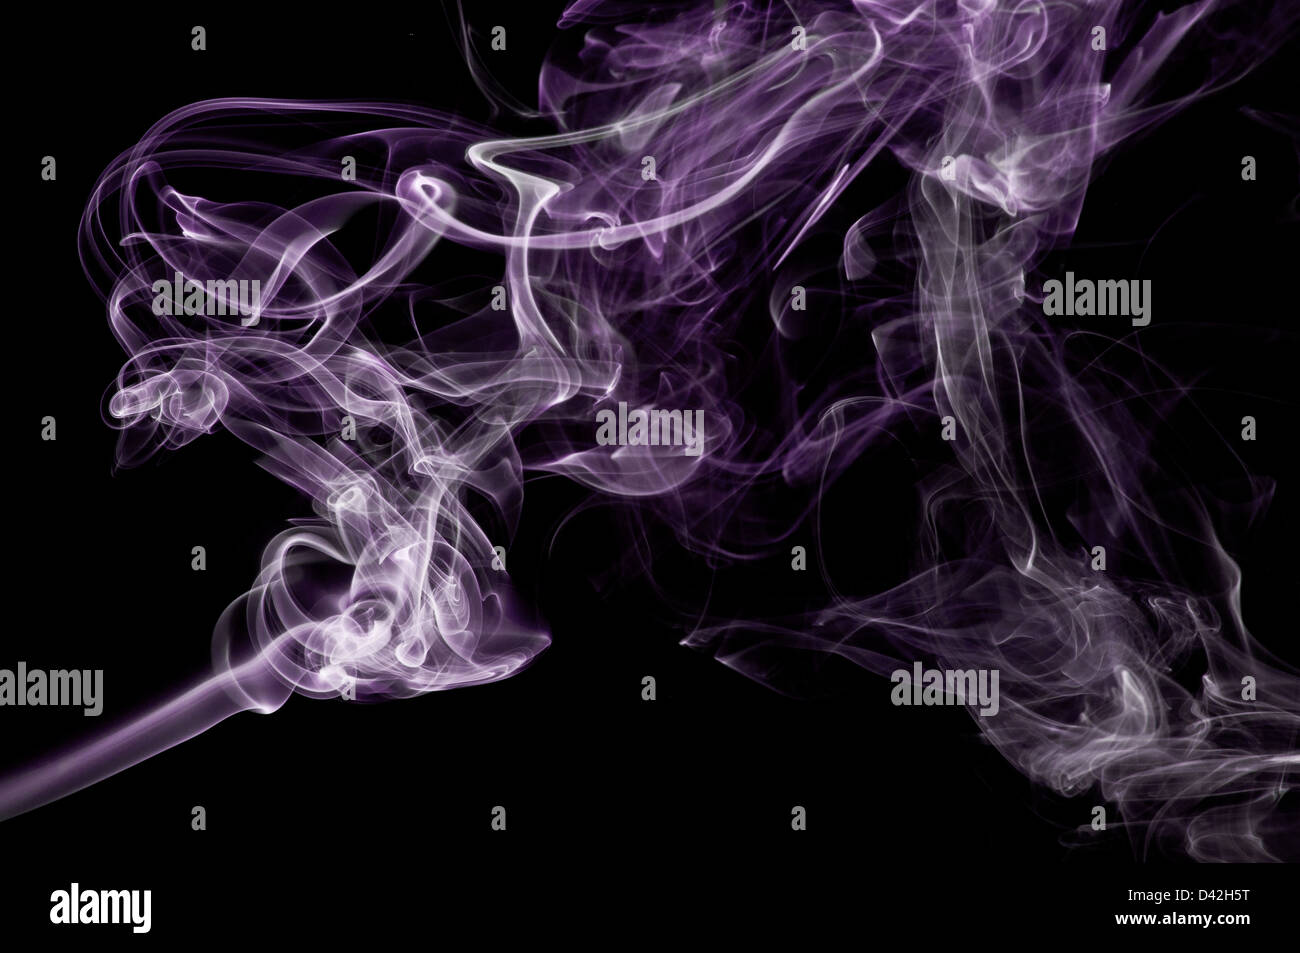 Ein abstraktes Bild lila Rauch vor einem schwarzen Hintergrund gesetzt. Stockfoto